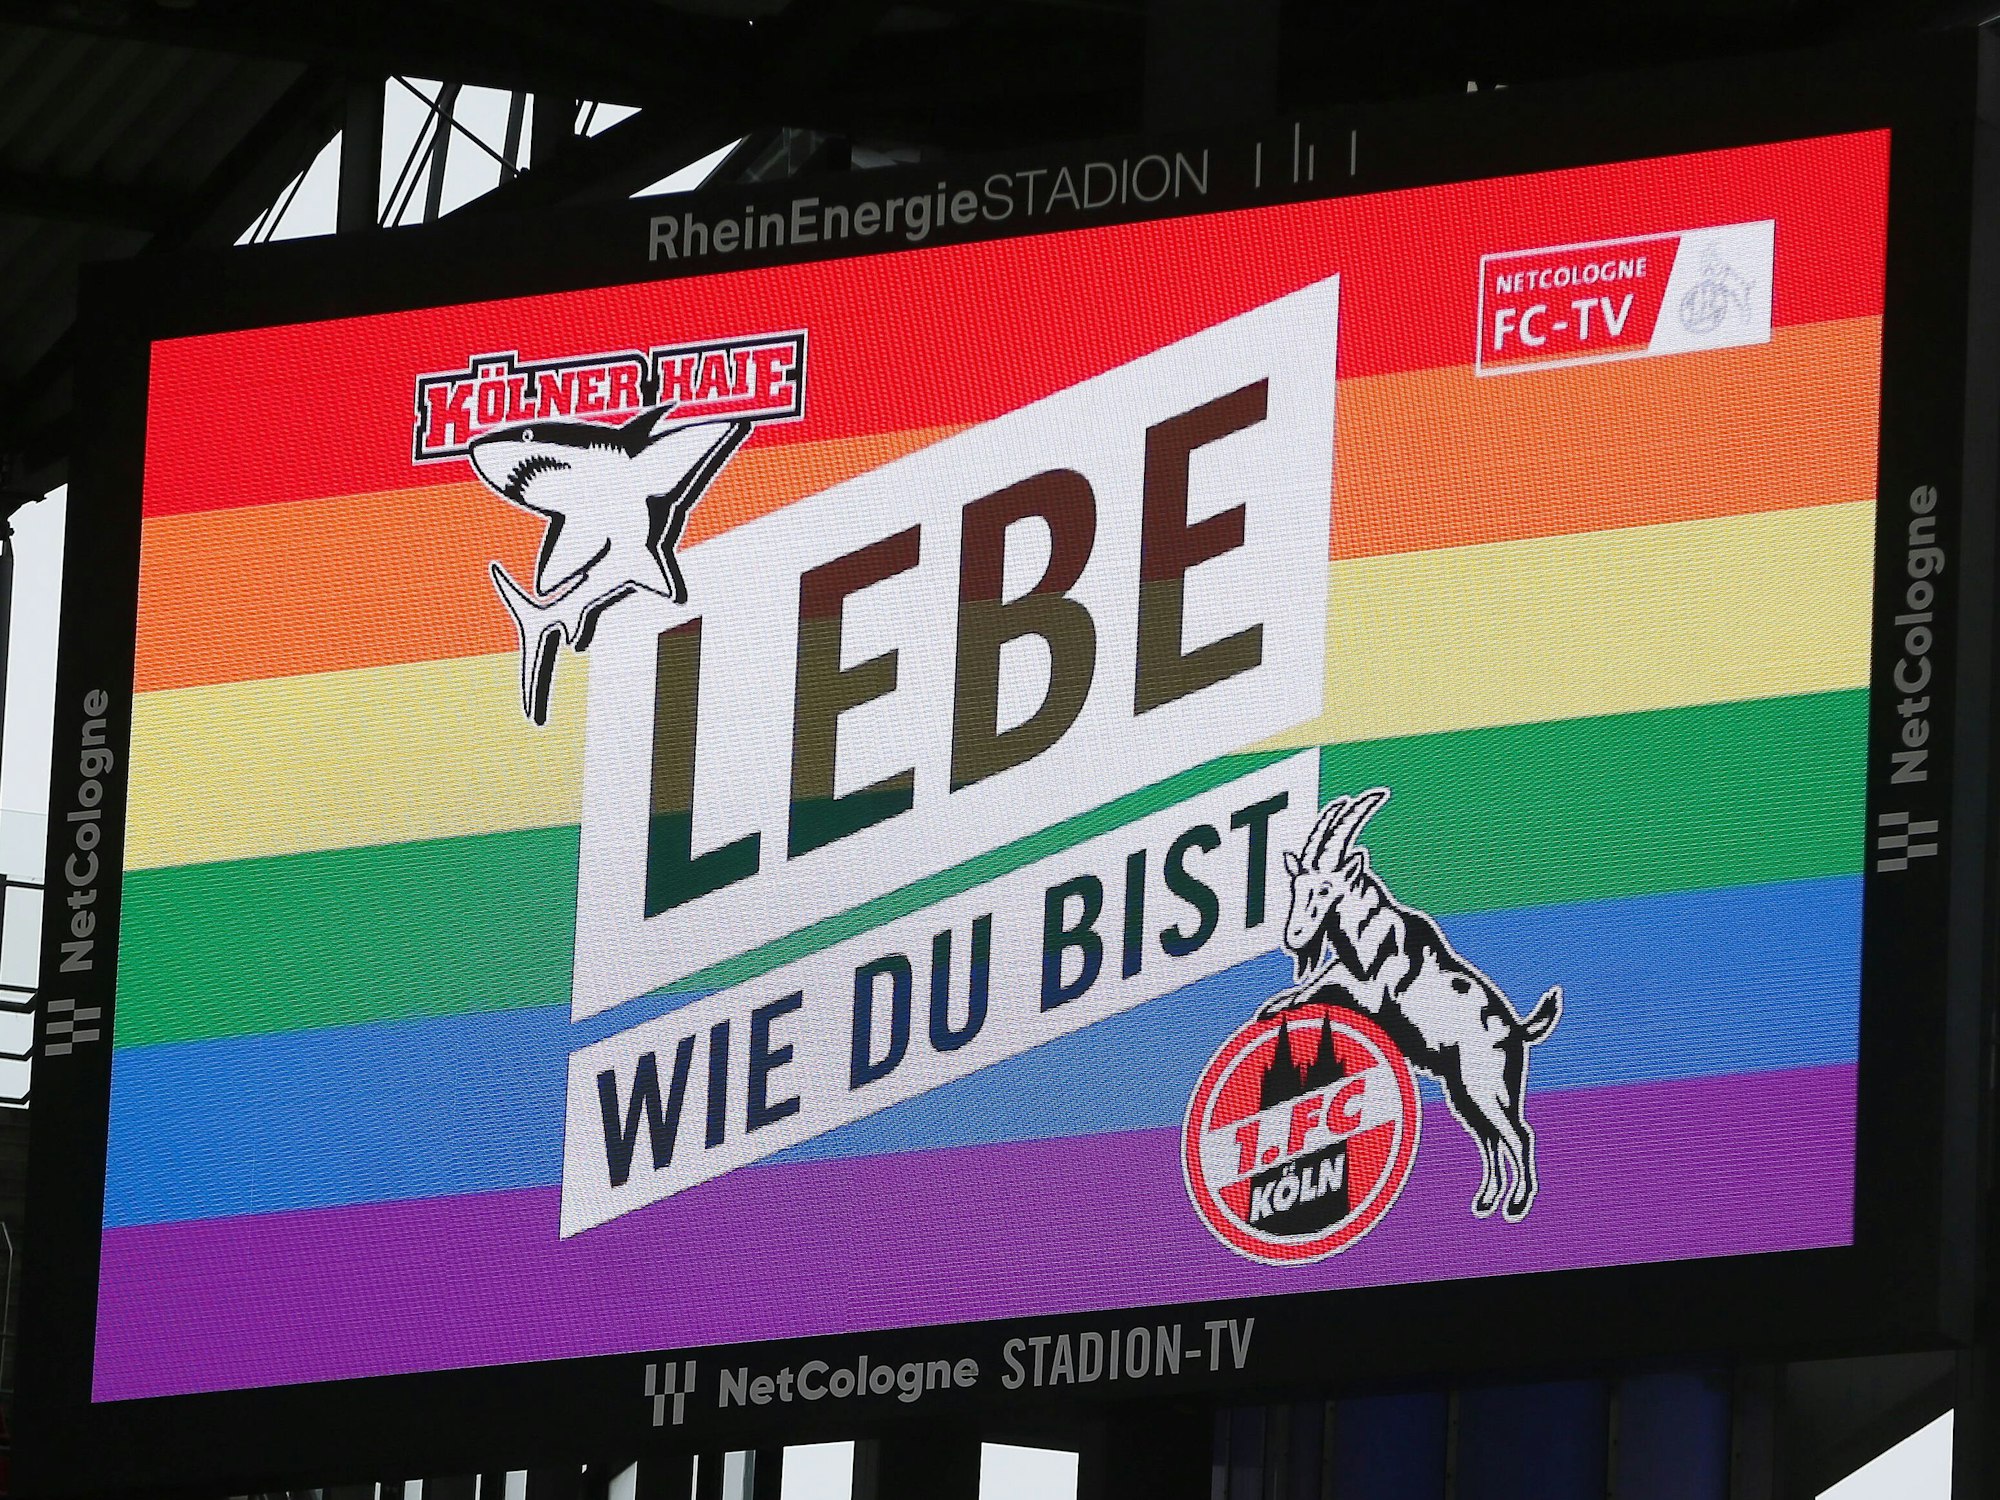 Der 1. FC Köln und die Kölner Haie ermutigen ihre Anhängerinnen und Anhänger auf der Anzeigetafel, so zu leben, wie sie wollen.